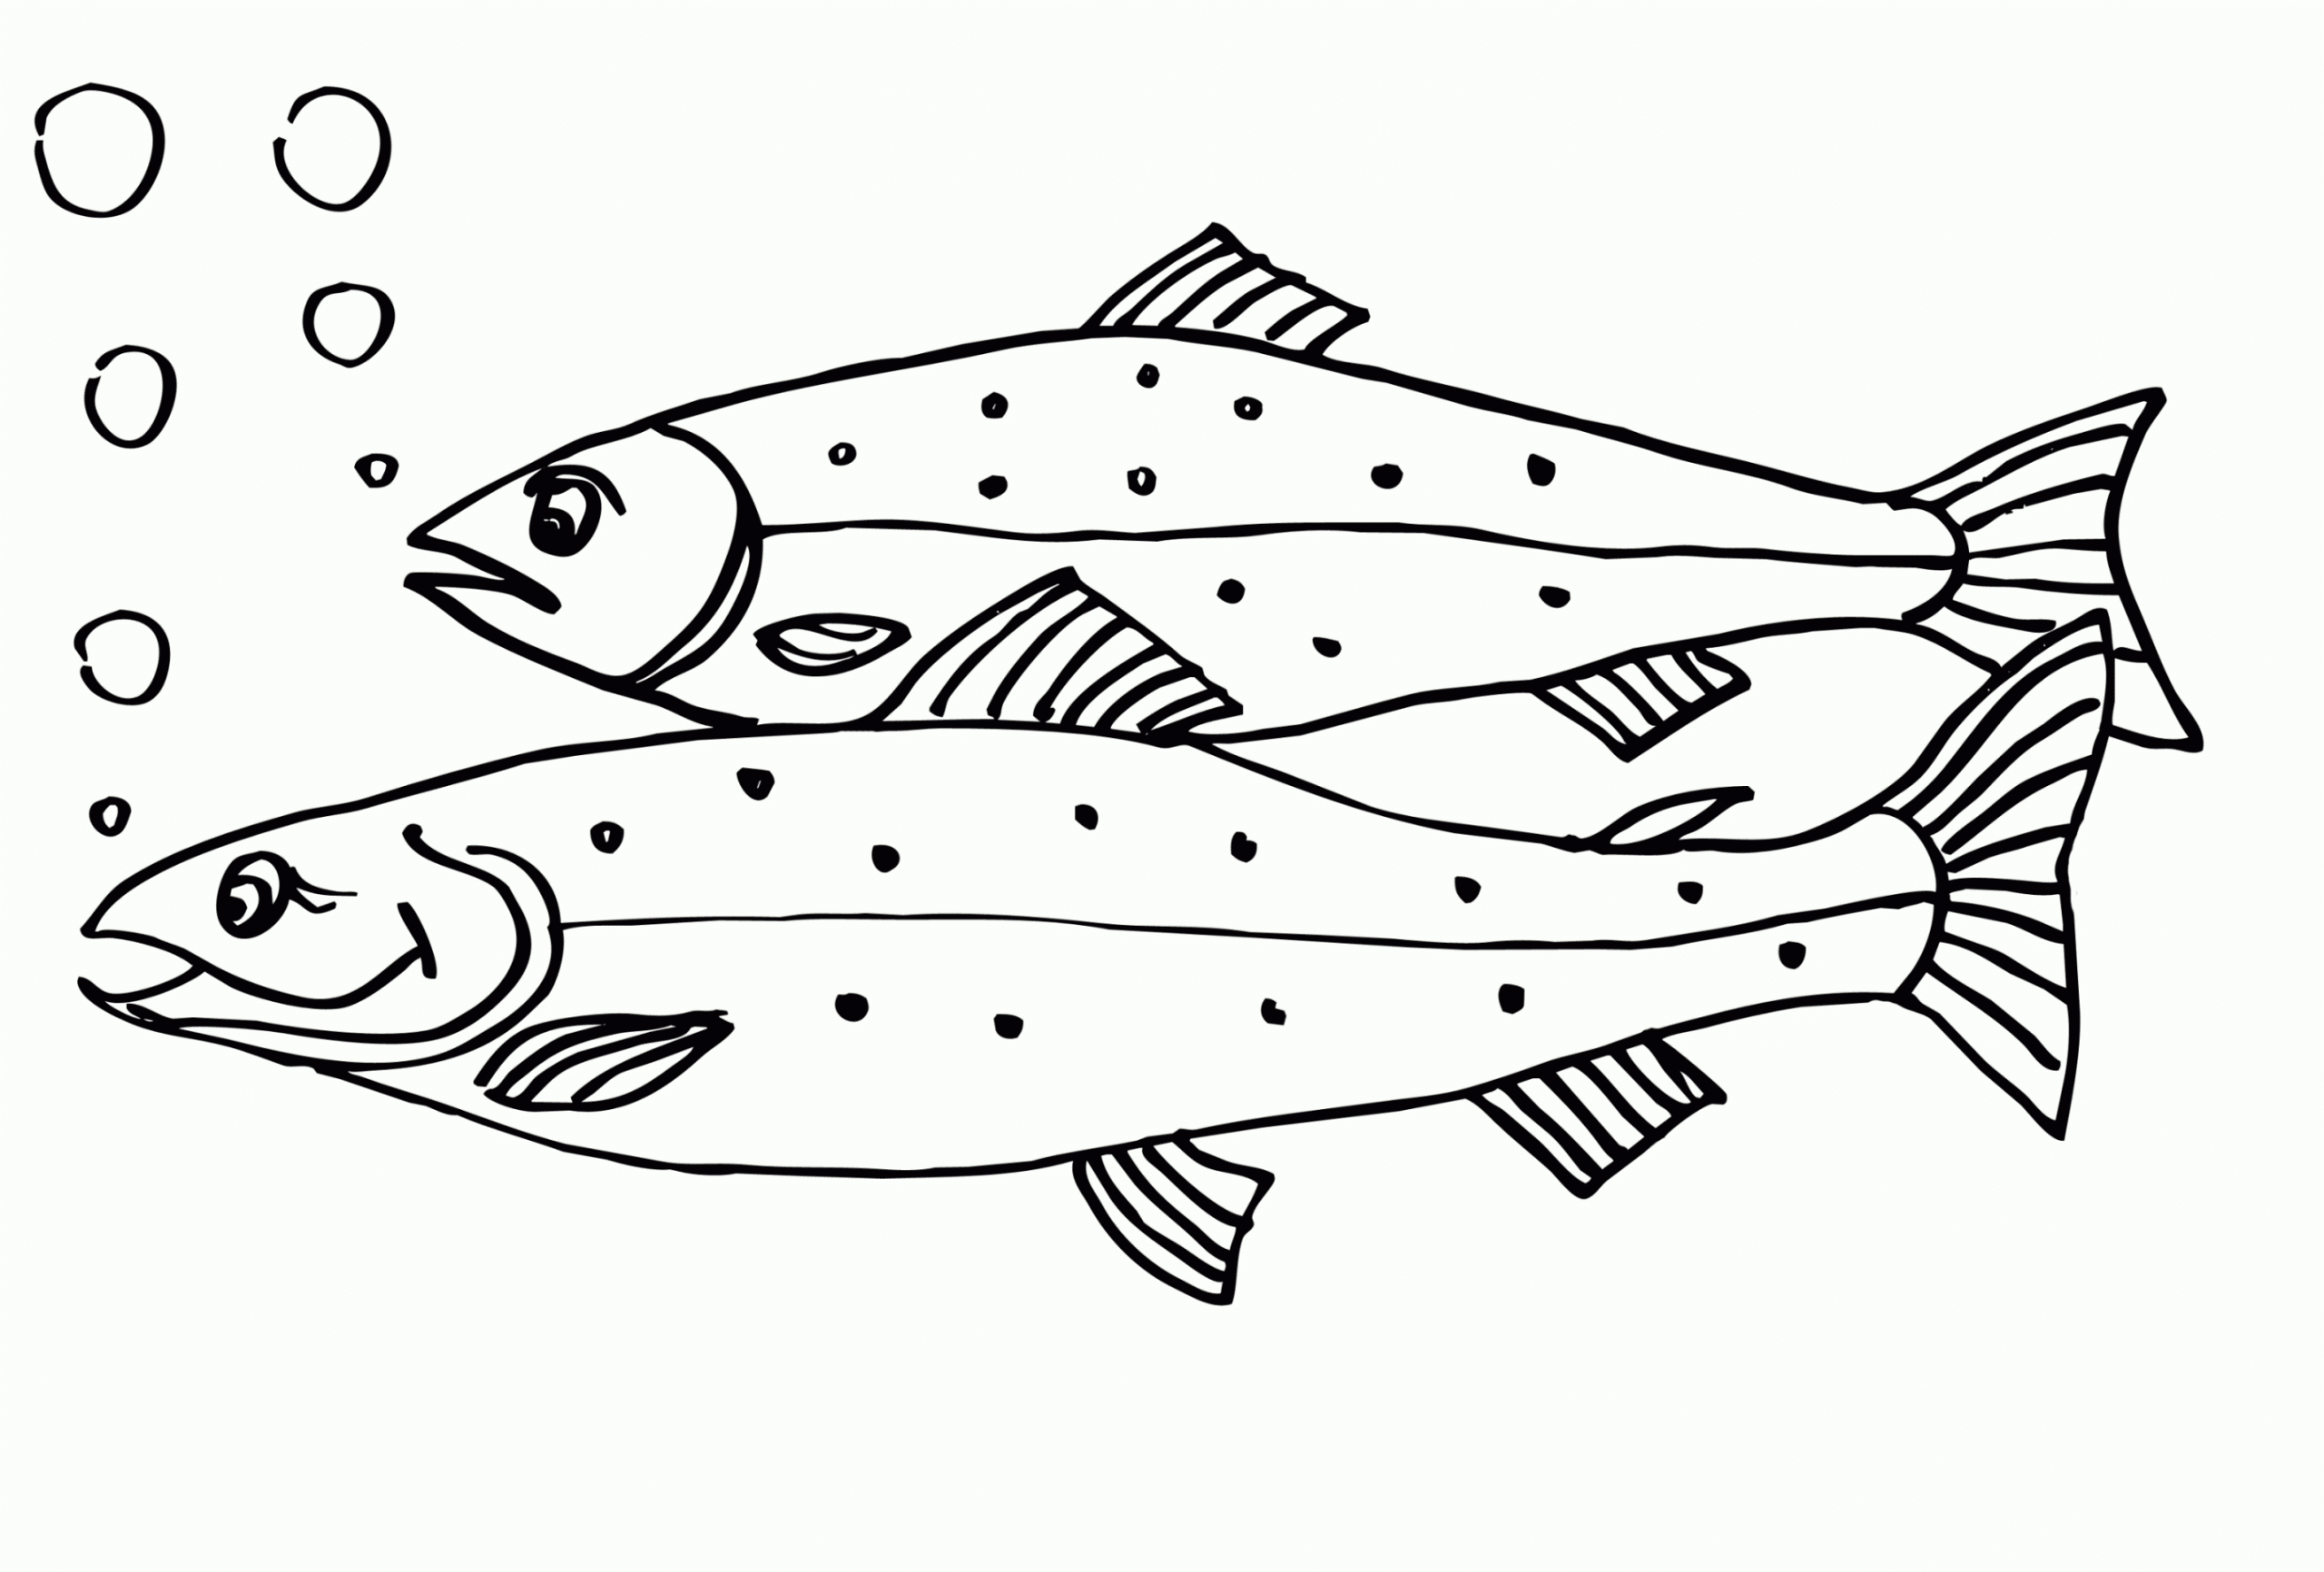 Malvorlagen Kostenlos Fisch | Coloring And Malvorlagan ganzes Ausmalbild Fische